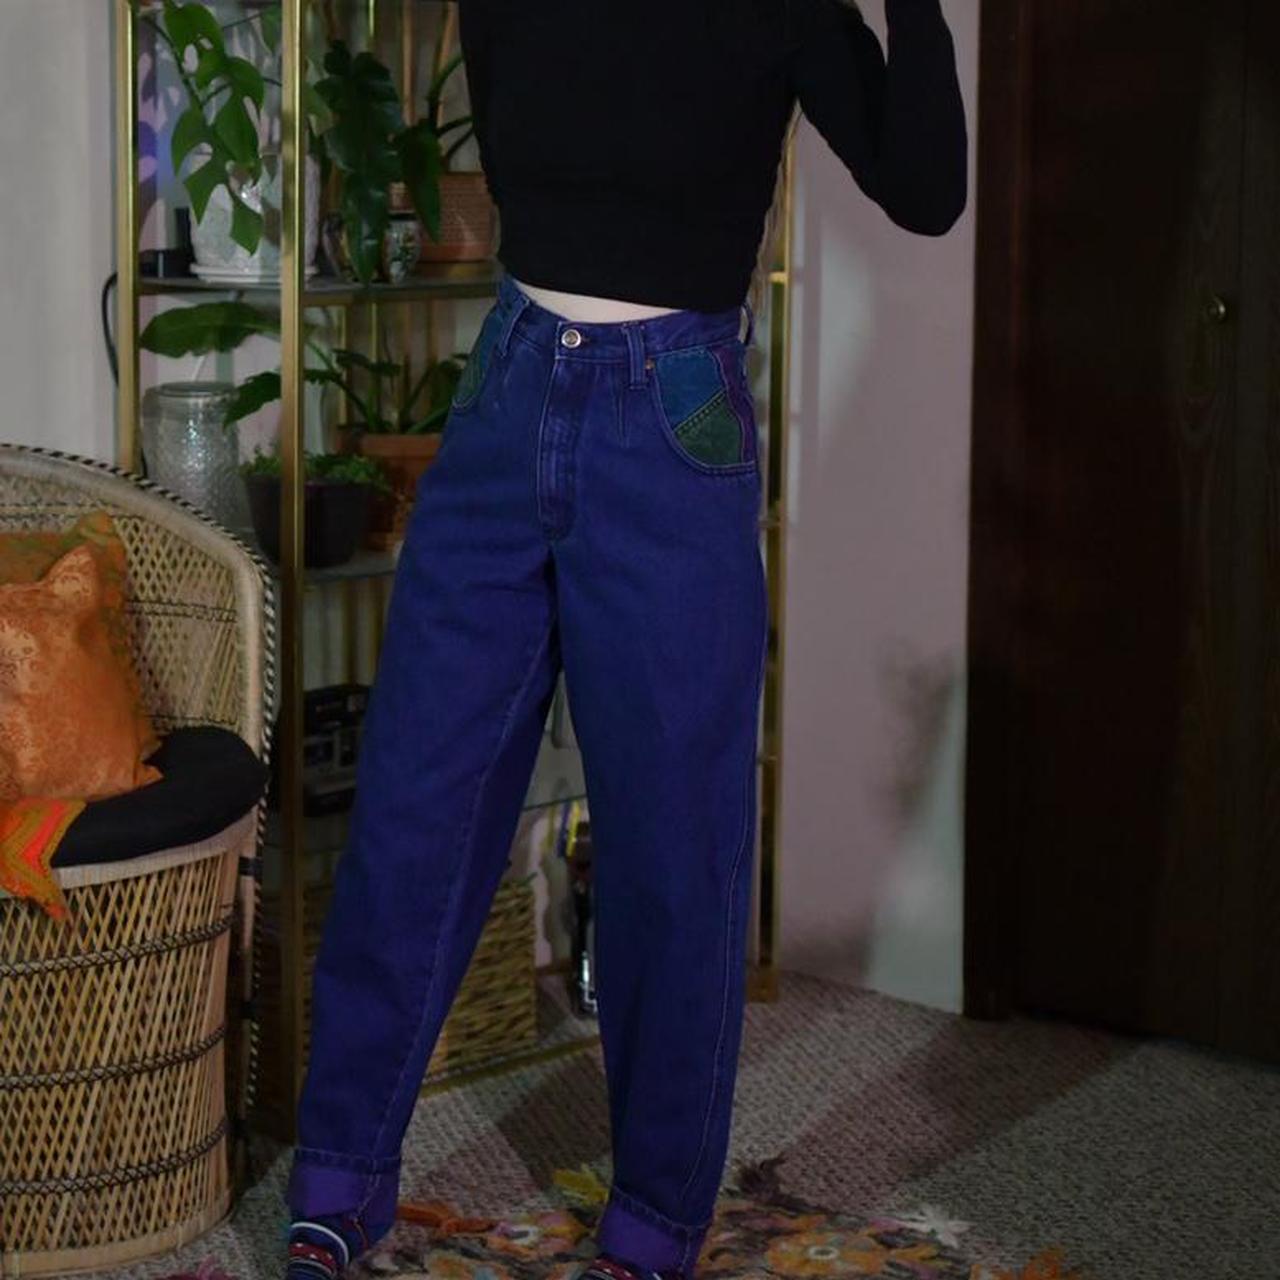 Zena Jeans Women's Purple and Blue Jeans (3)